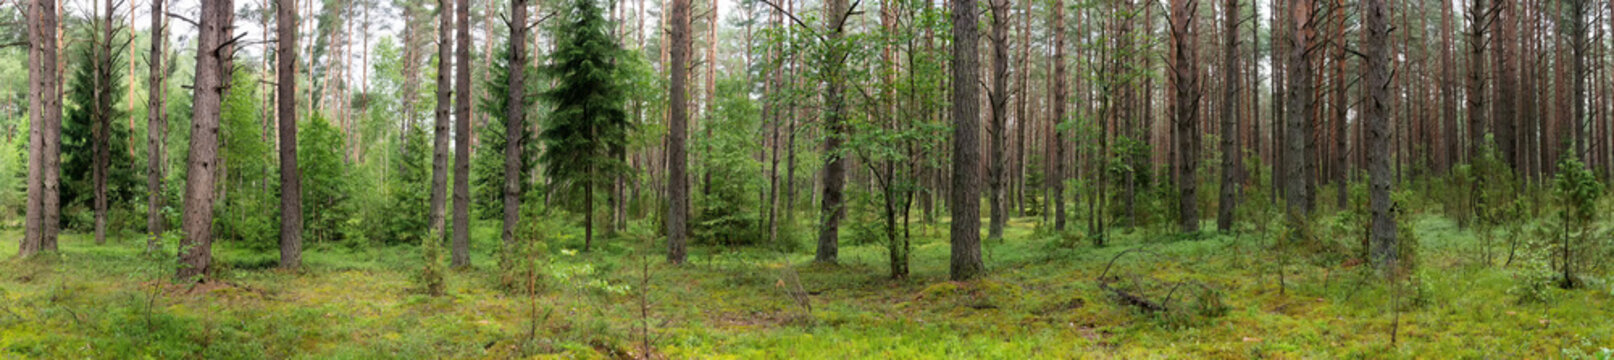 Landscape of Belarus - pine forest